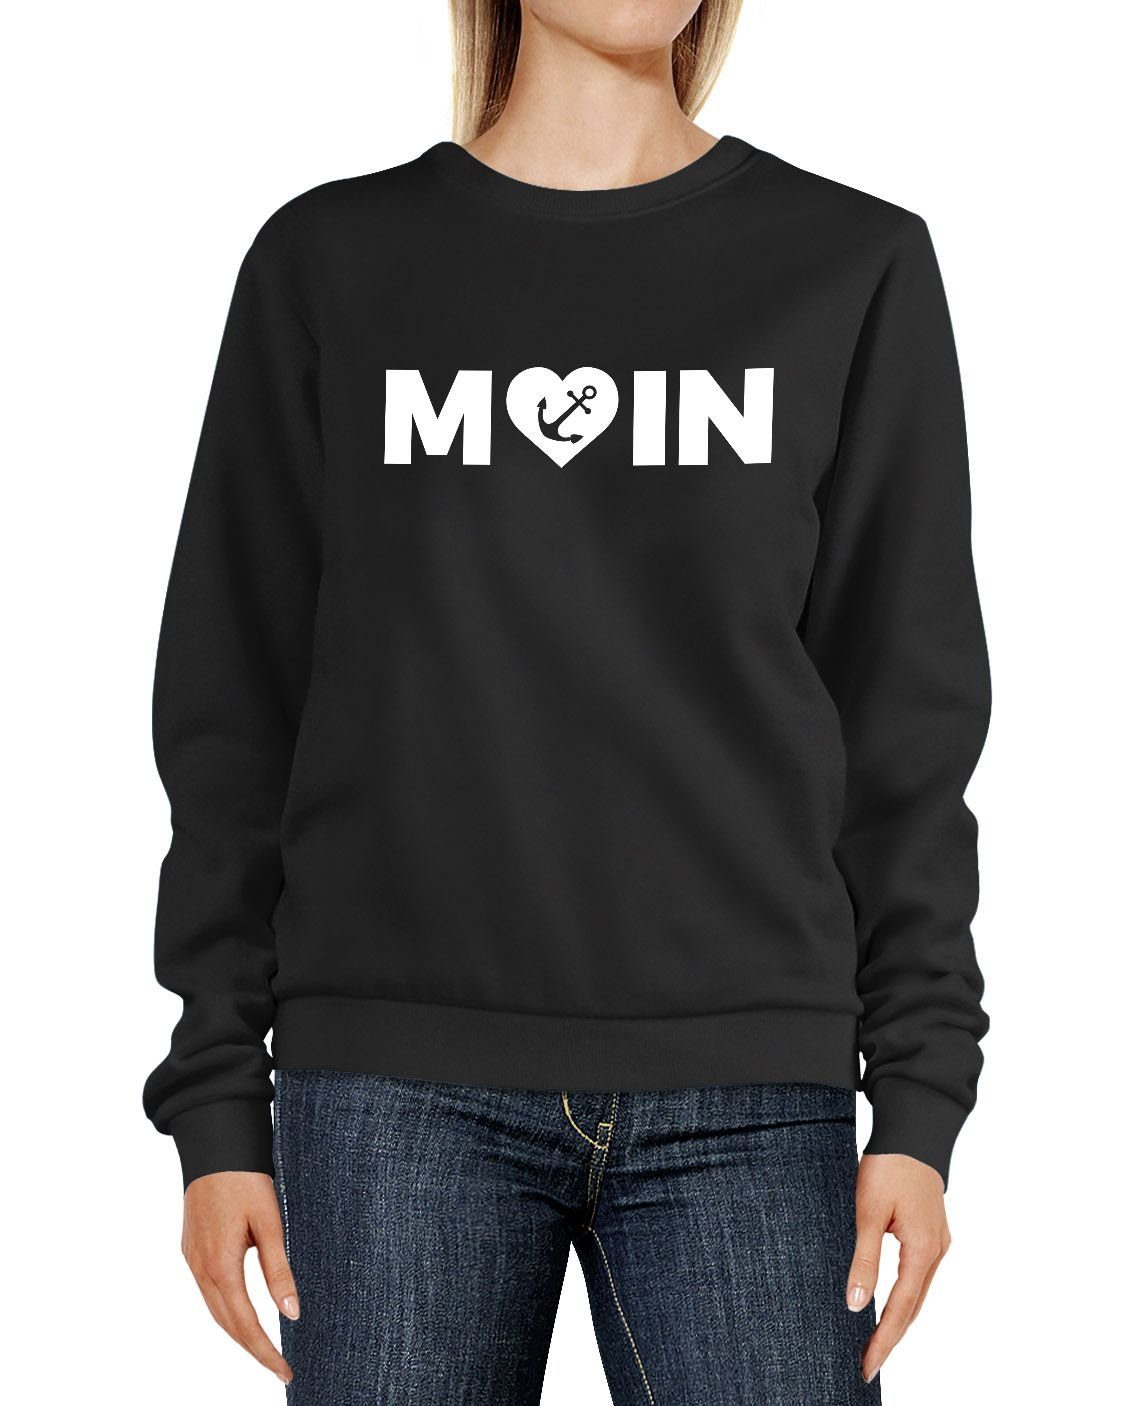 MoonWorks Sweatshirt Sweatshirt Damen Aufdruck Moin Herz mit Anker Rundhals-Pullover Pulli Sweater Moonworks® schwarz